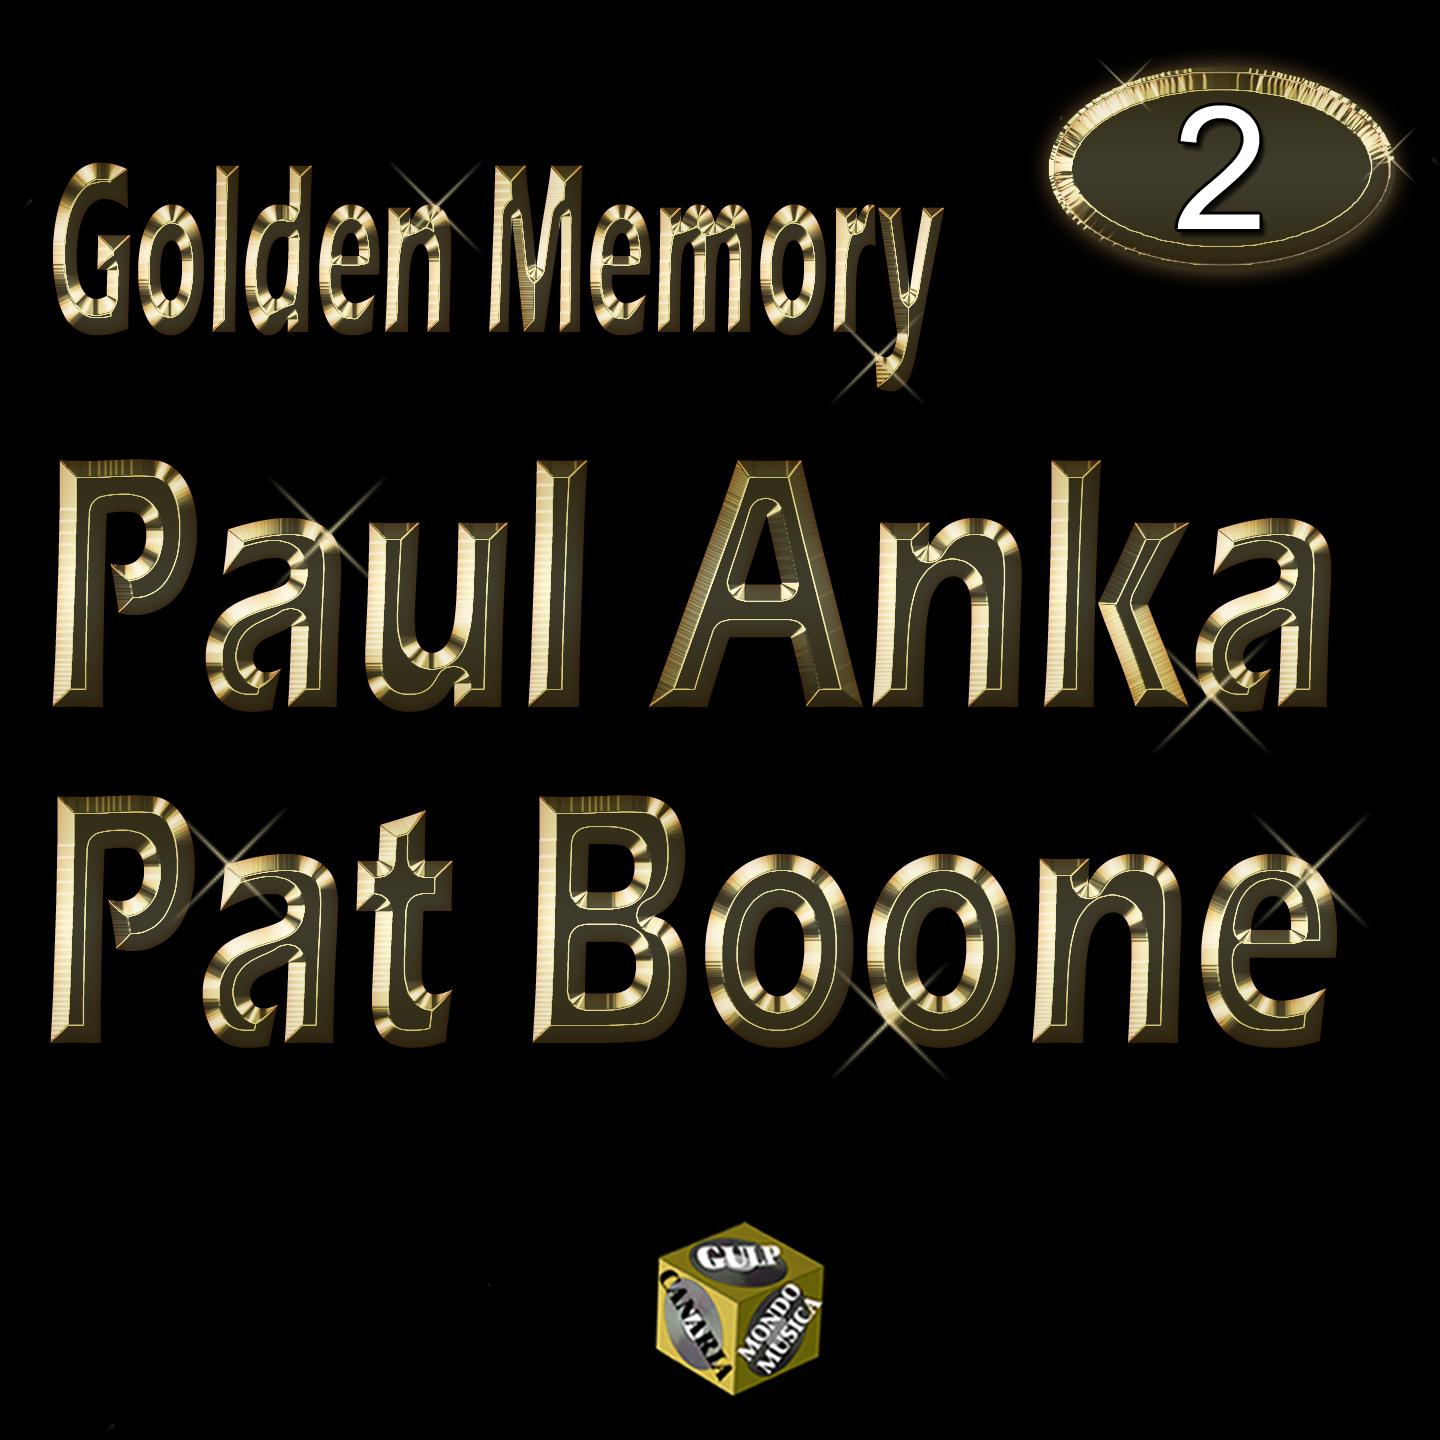 Golden Memory - Paul Anka & Pat Boone Vol 2